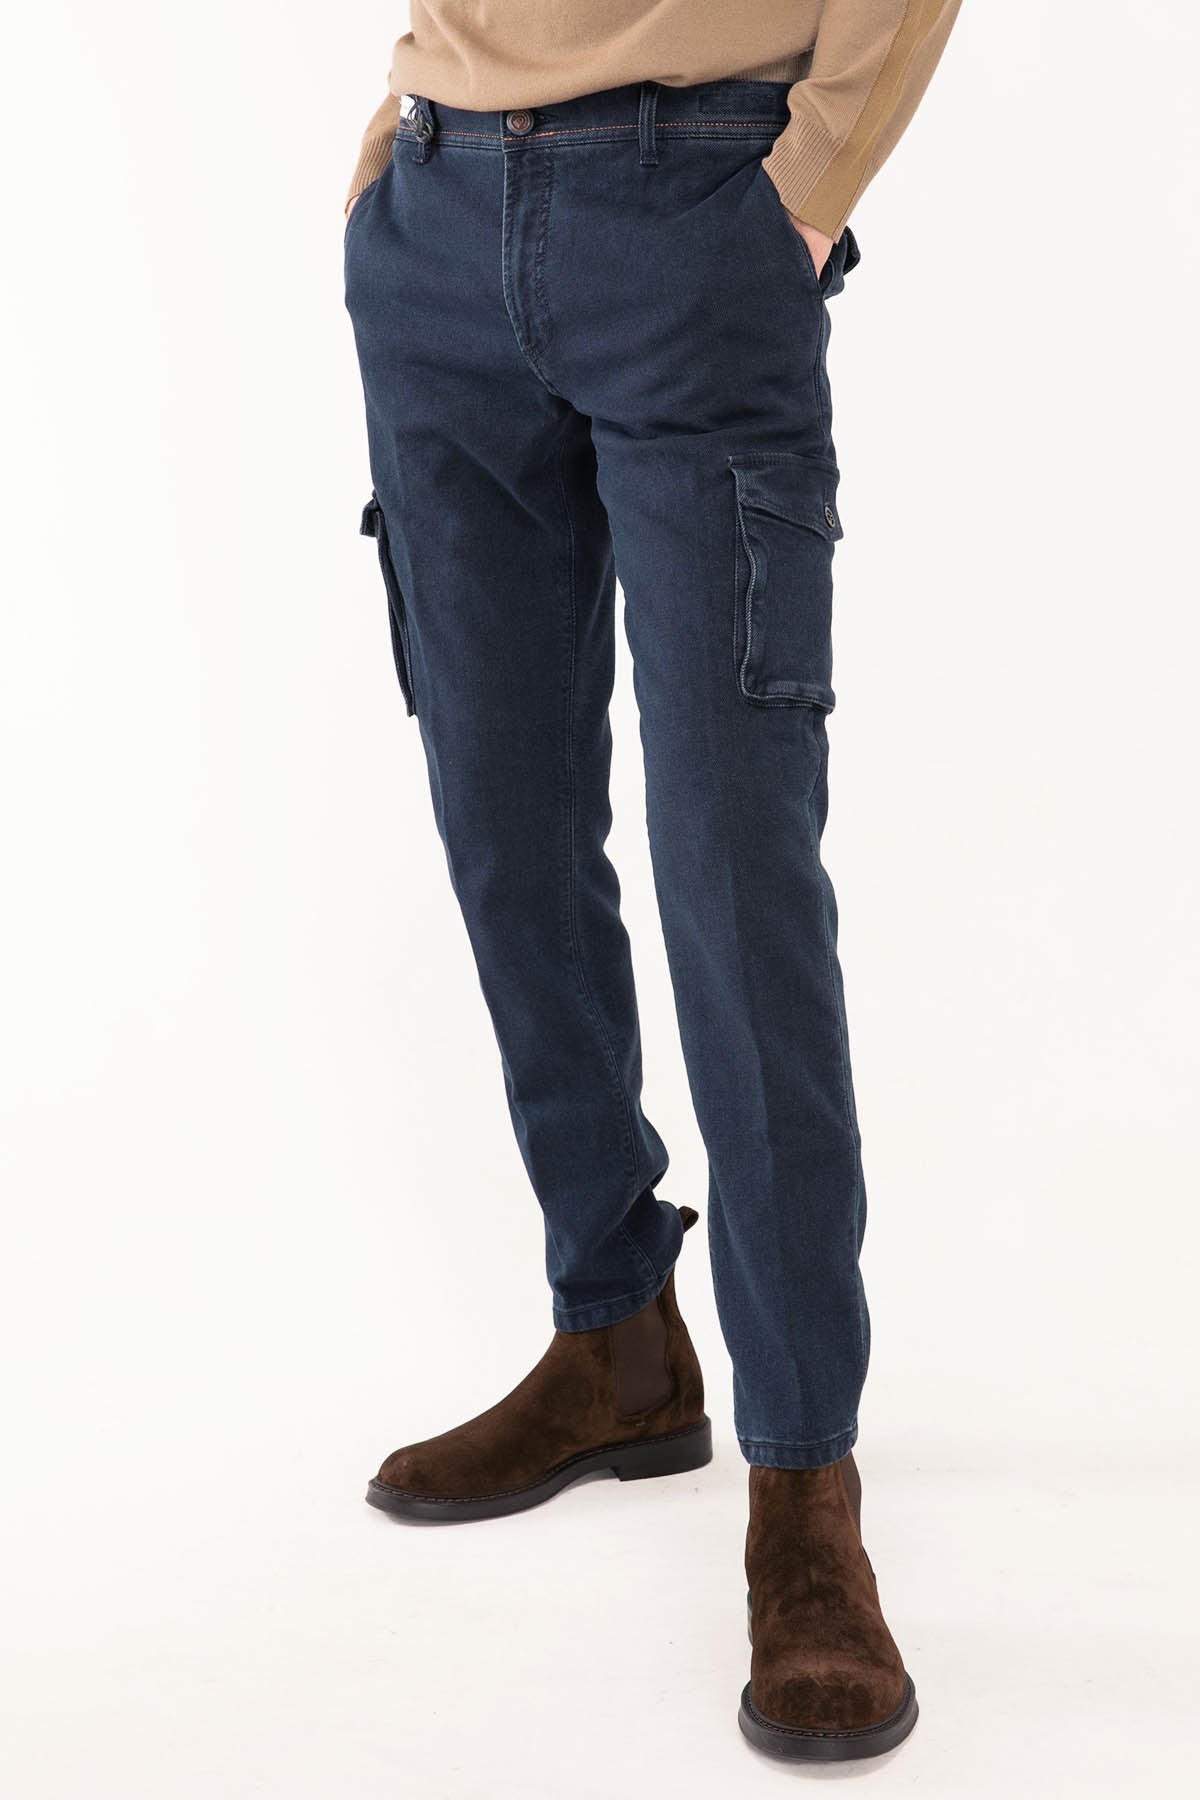 Richard J. Brown Nairobi Jeans-Libas Trendy Fashion Store